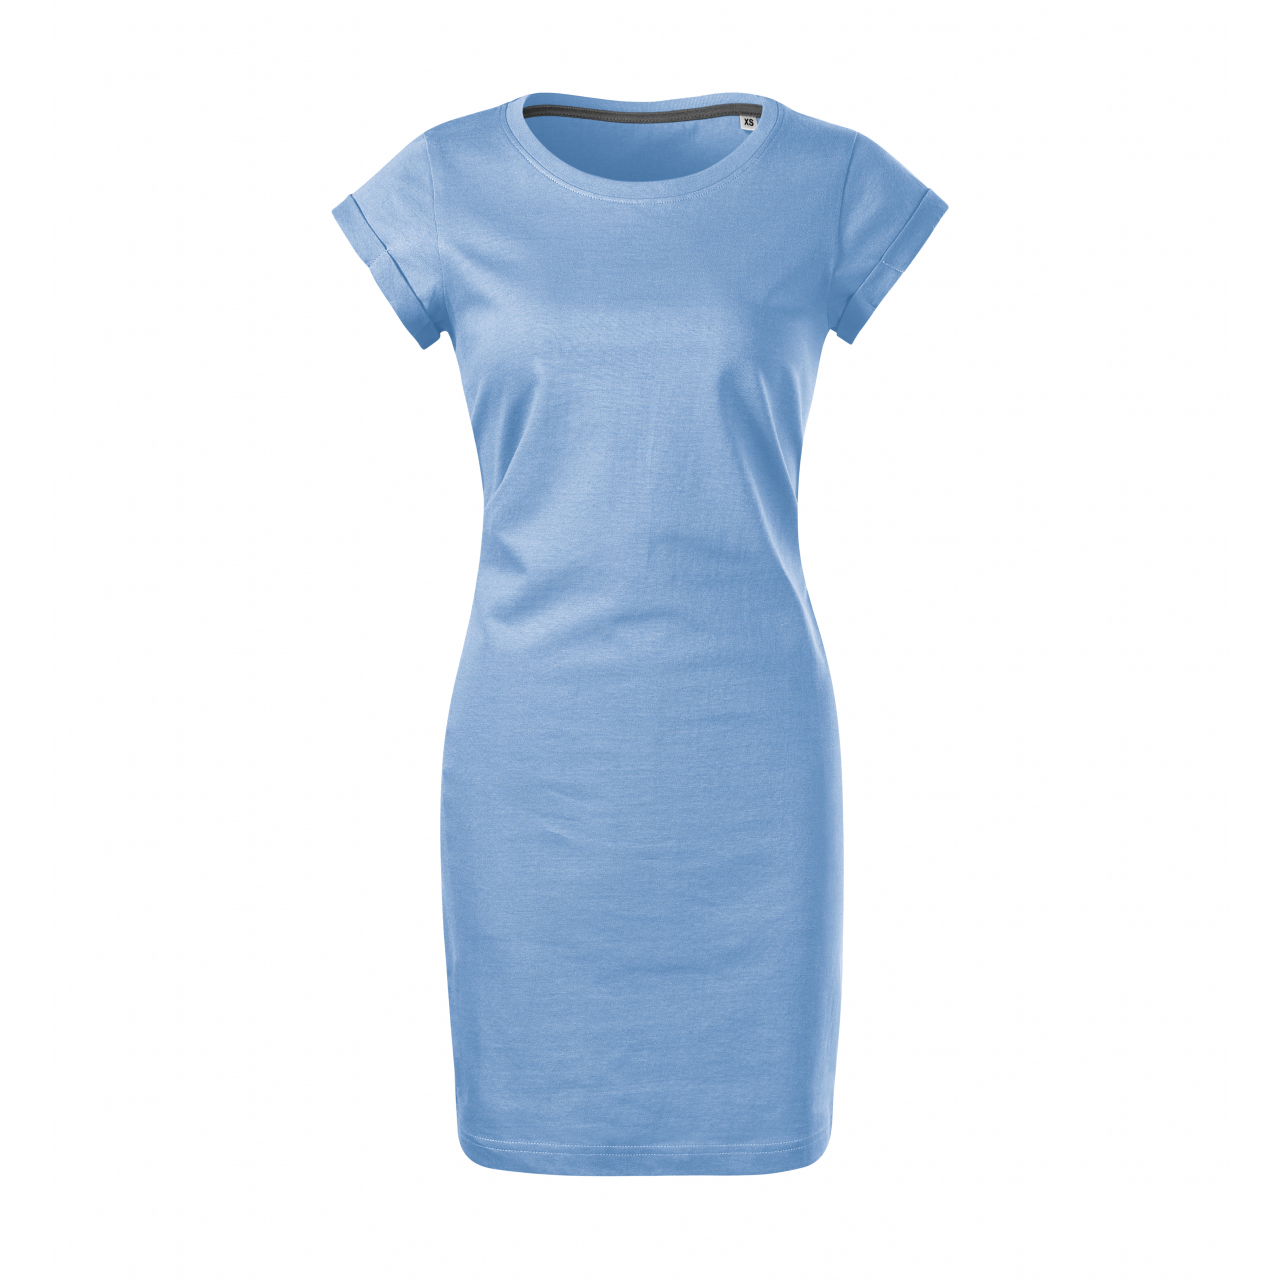 Šaty dámské Malfini Freedom - světle modré, L